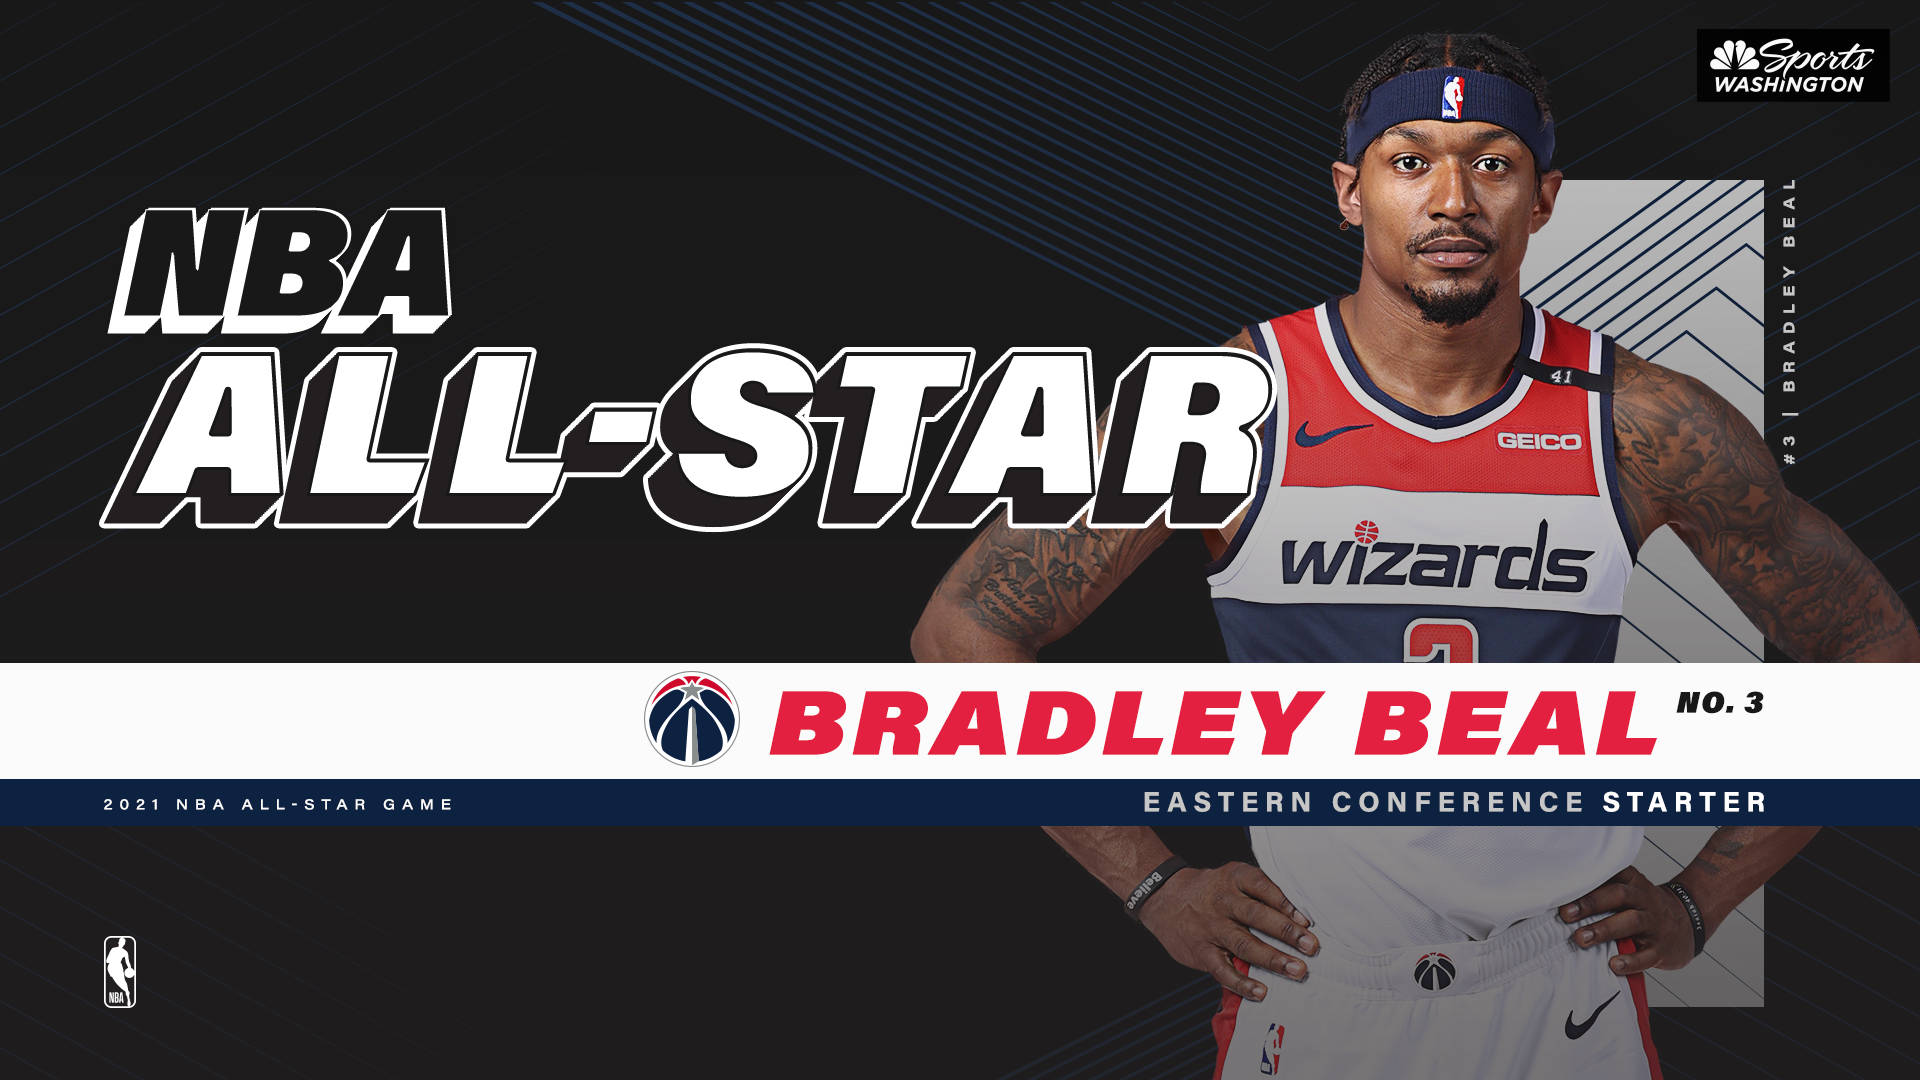 Bradleybeal, Nba All-star-spelare. Wallpaper